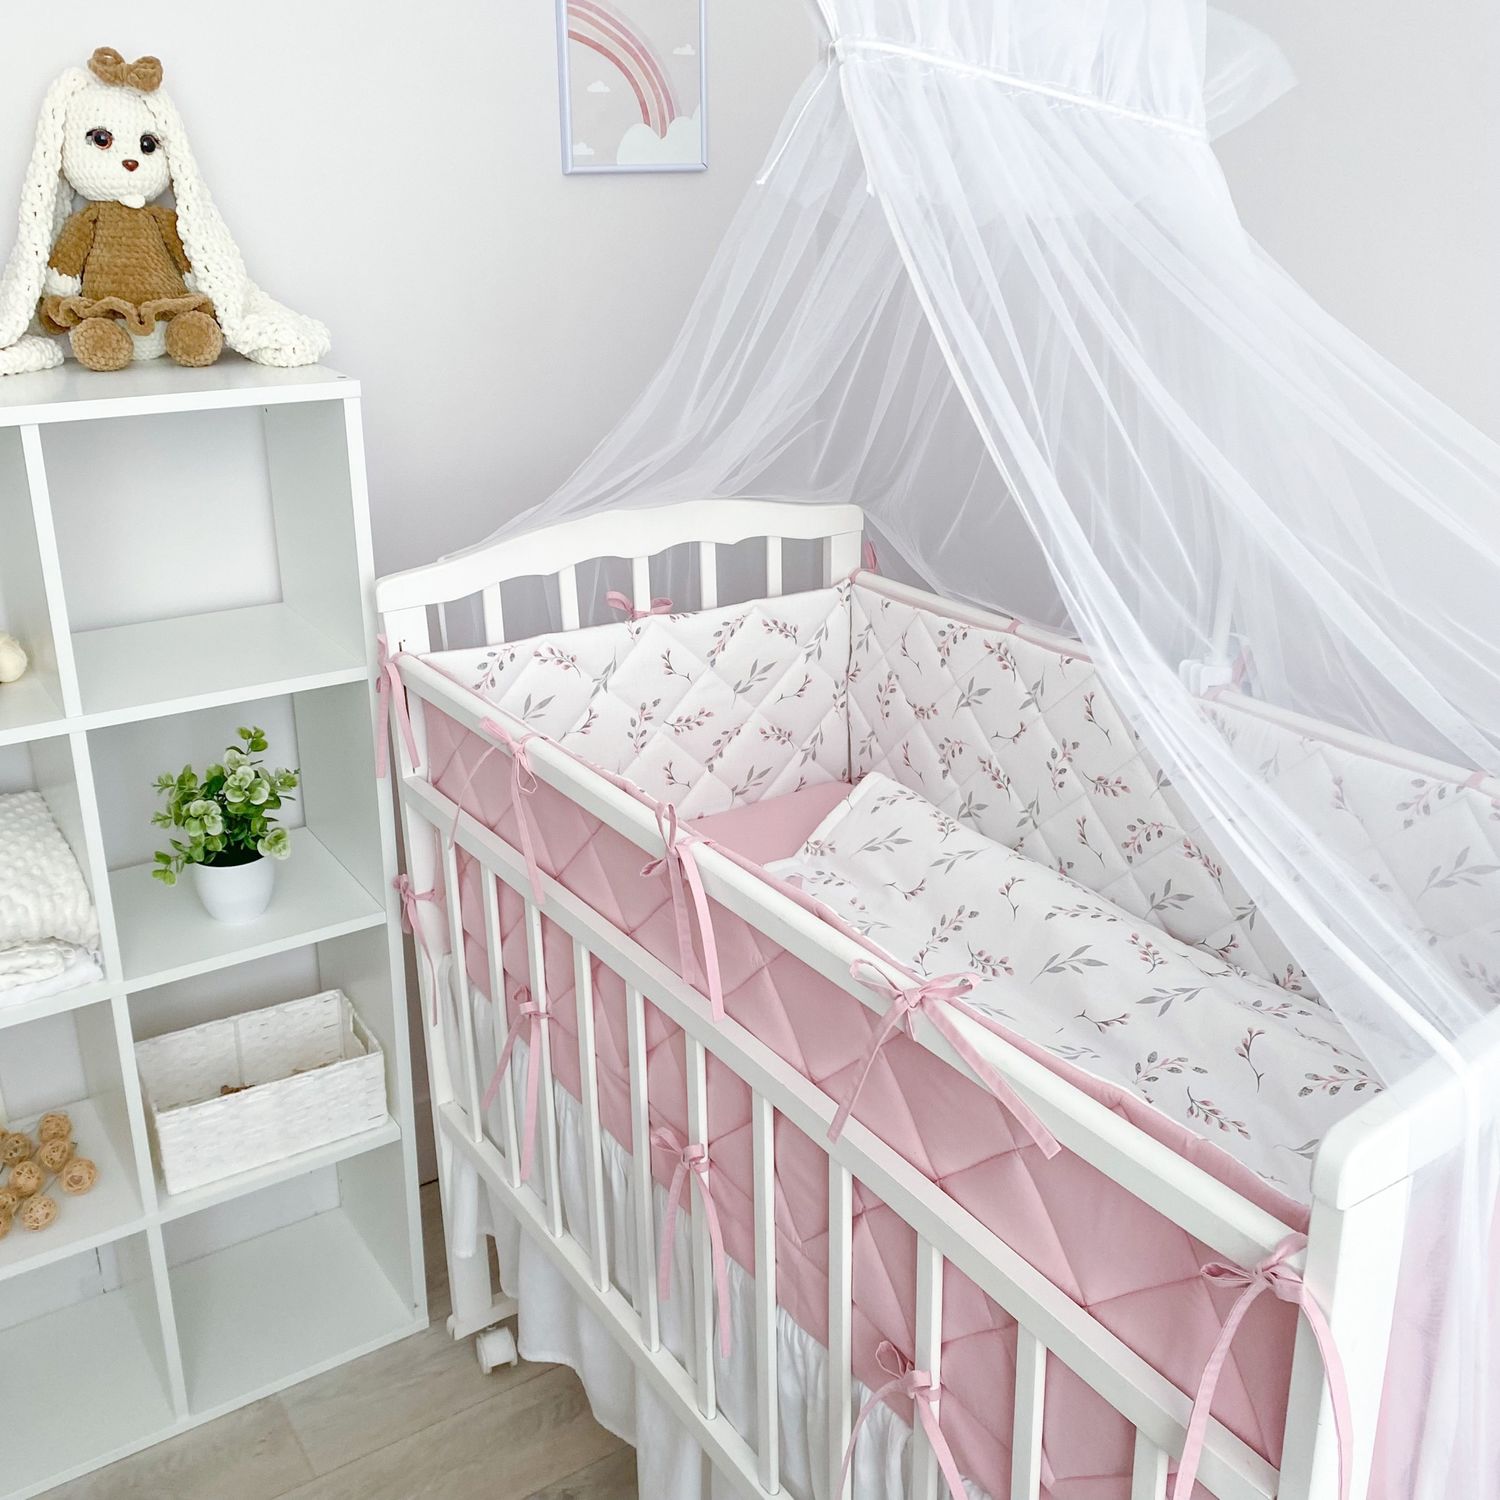 Набор в кроватку для новорожденного - купить недорого в интернет магазине